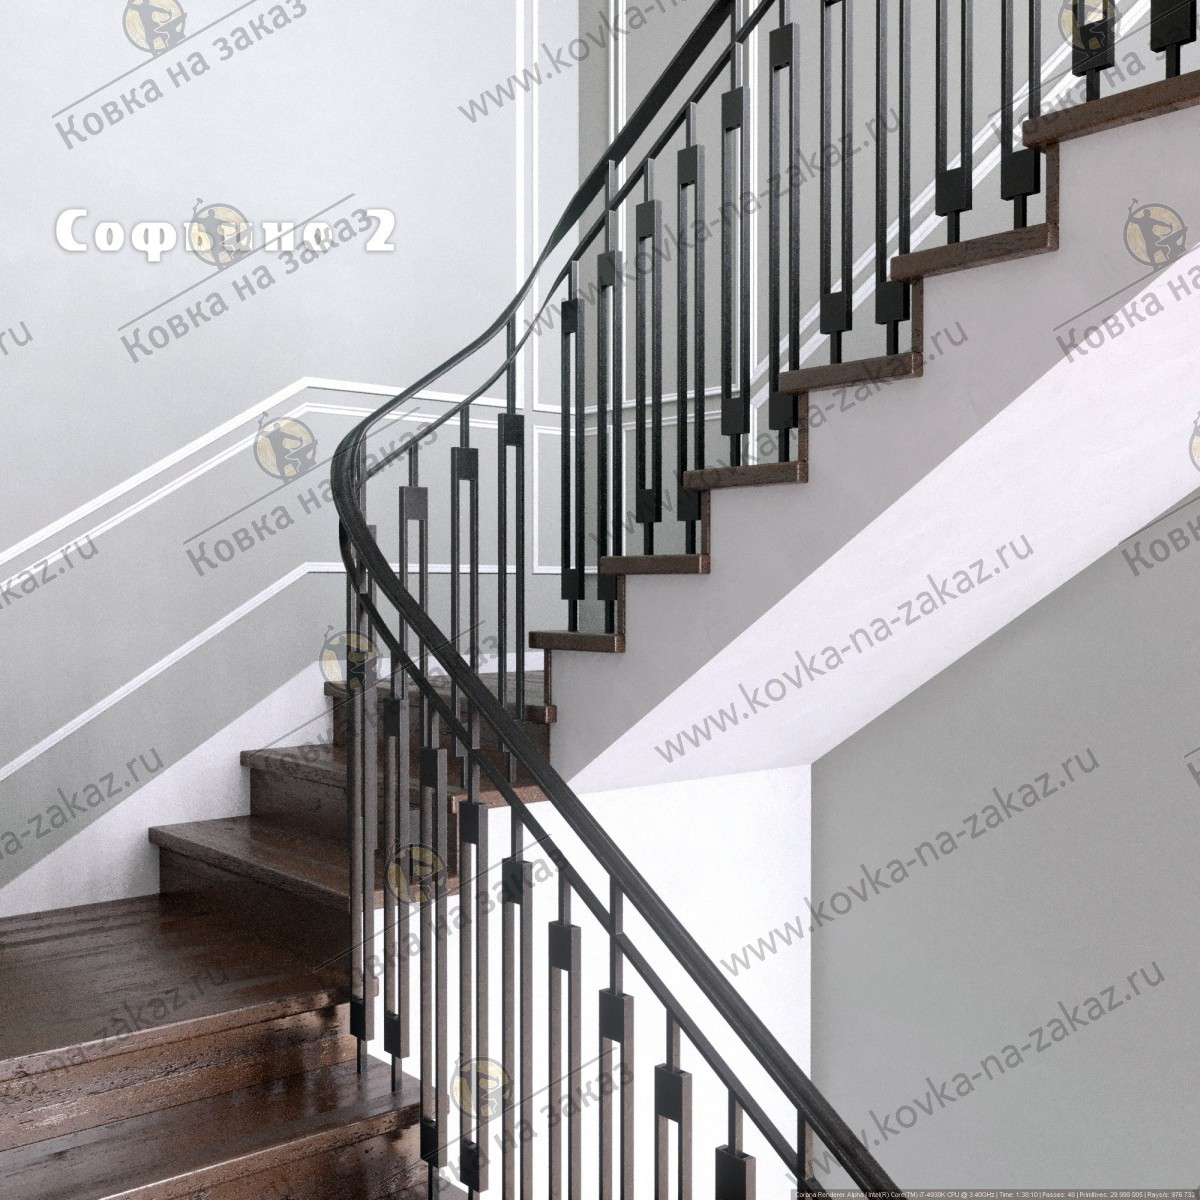 Перила для лестницы в КП Софьино 2, дизайн и эскизы, фото 3